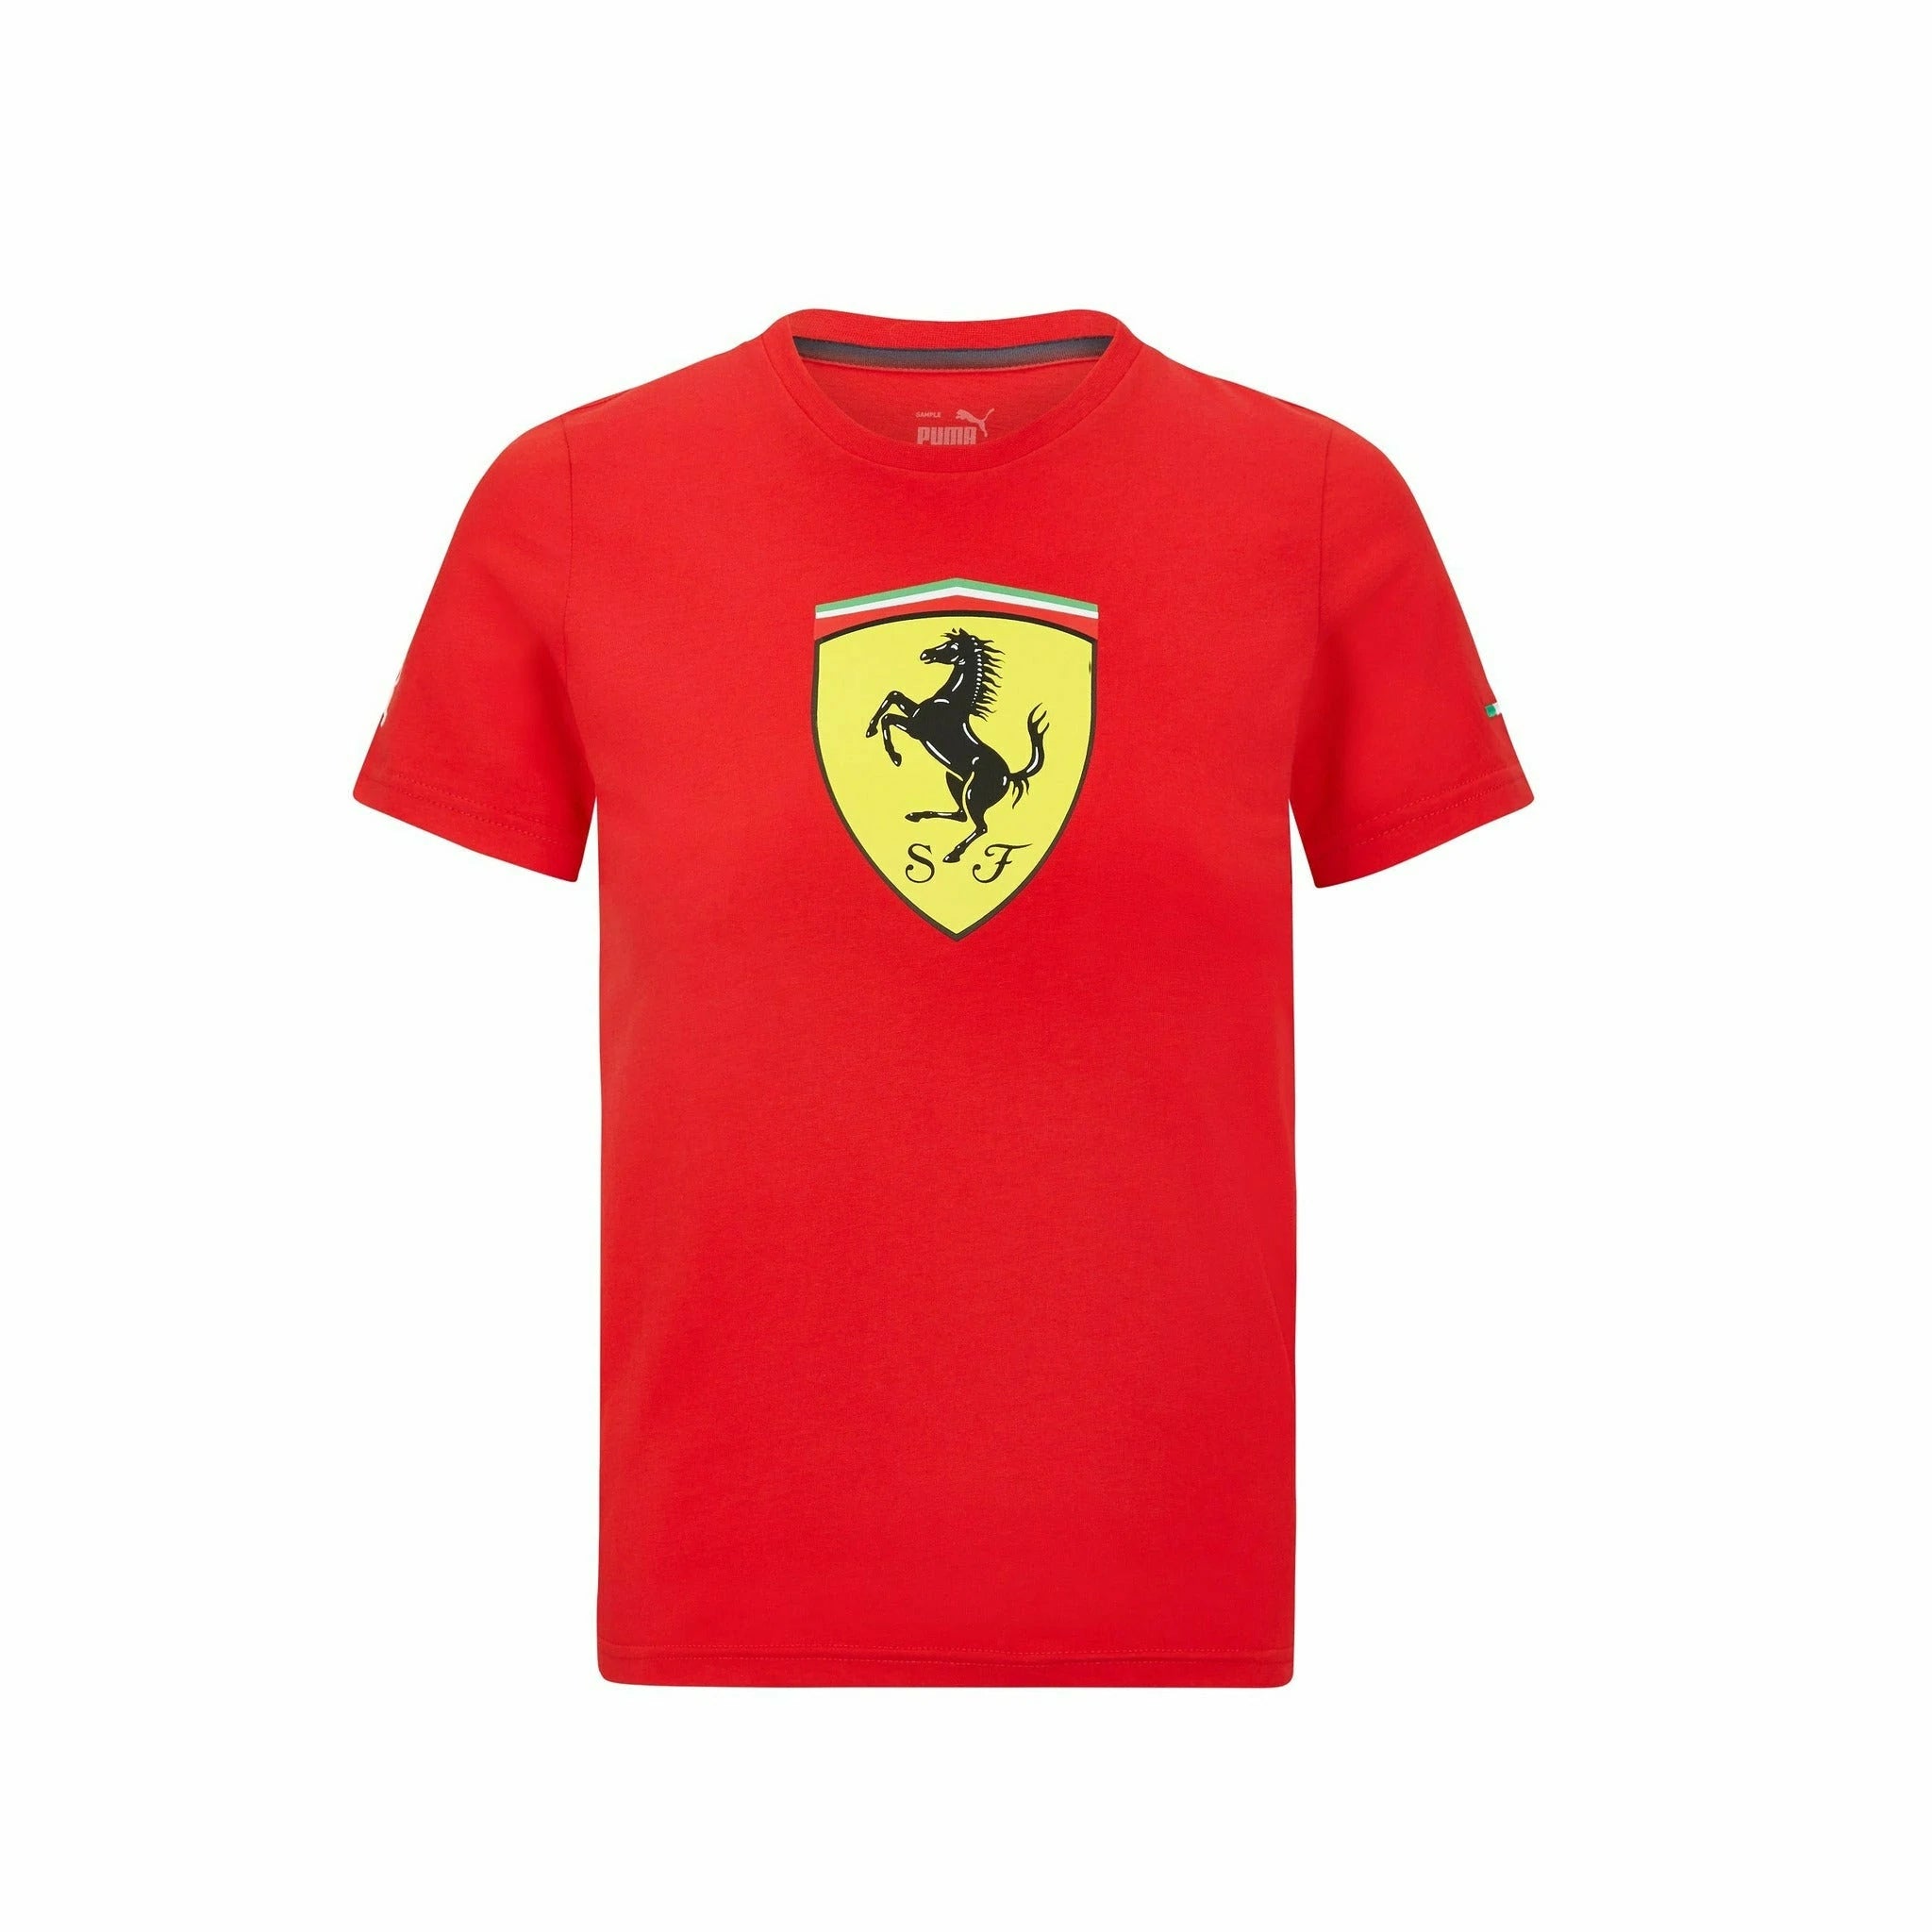 Scuderia Ferrari F1 Kids Large Shield T-Shirt Red